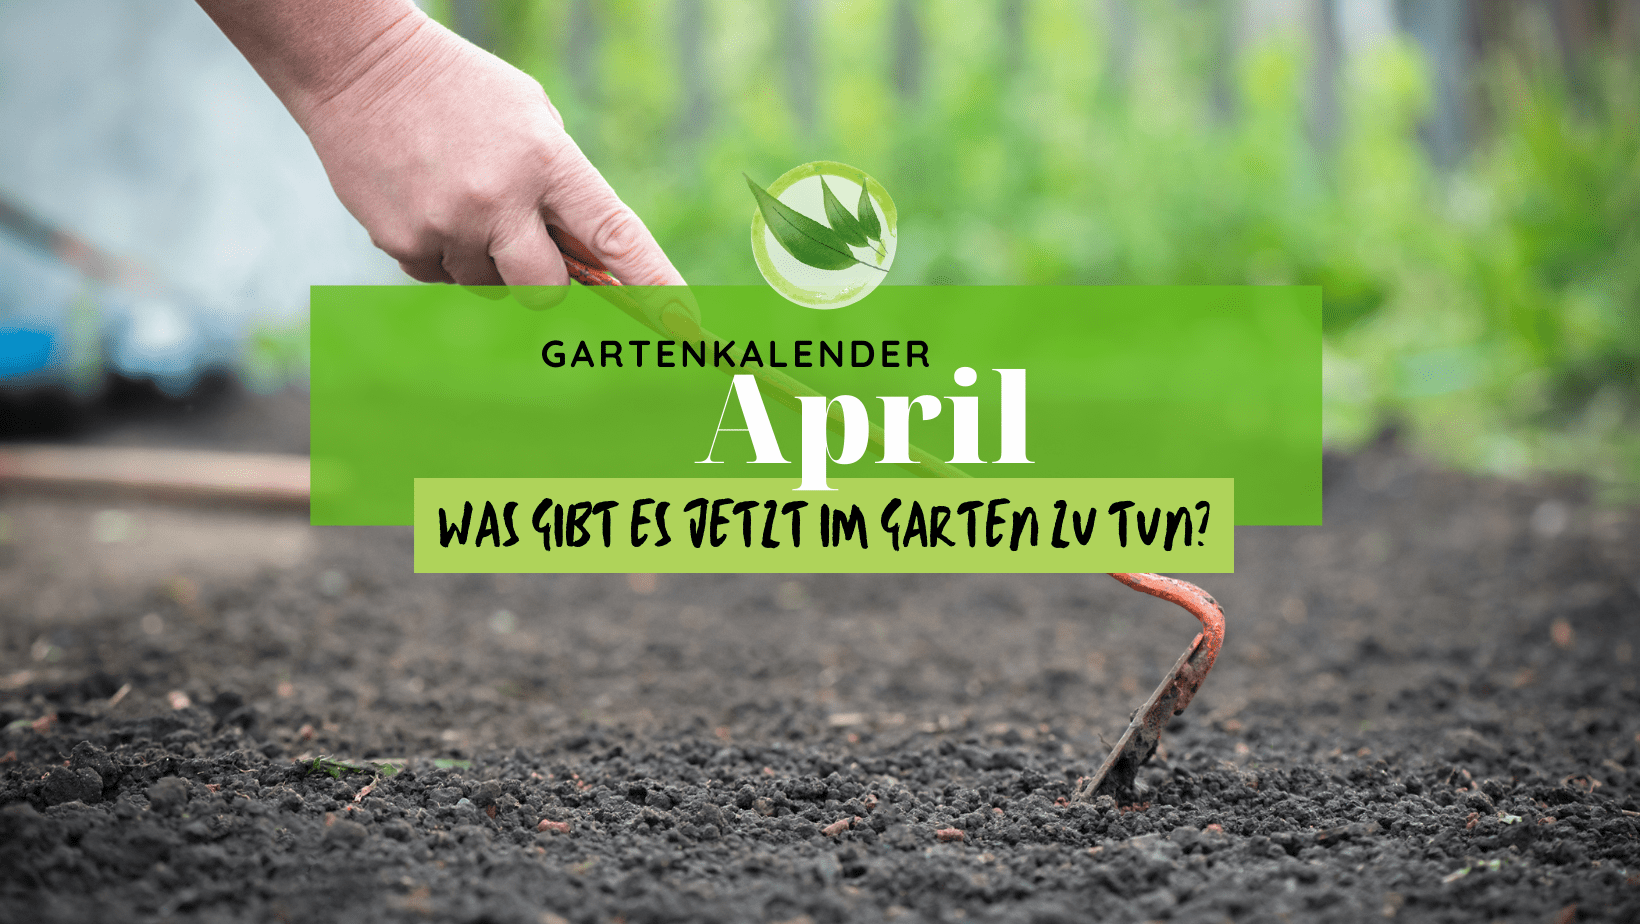 Gartenkalender April – was gibt es jetzt im Garten zu tun?